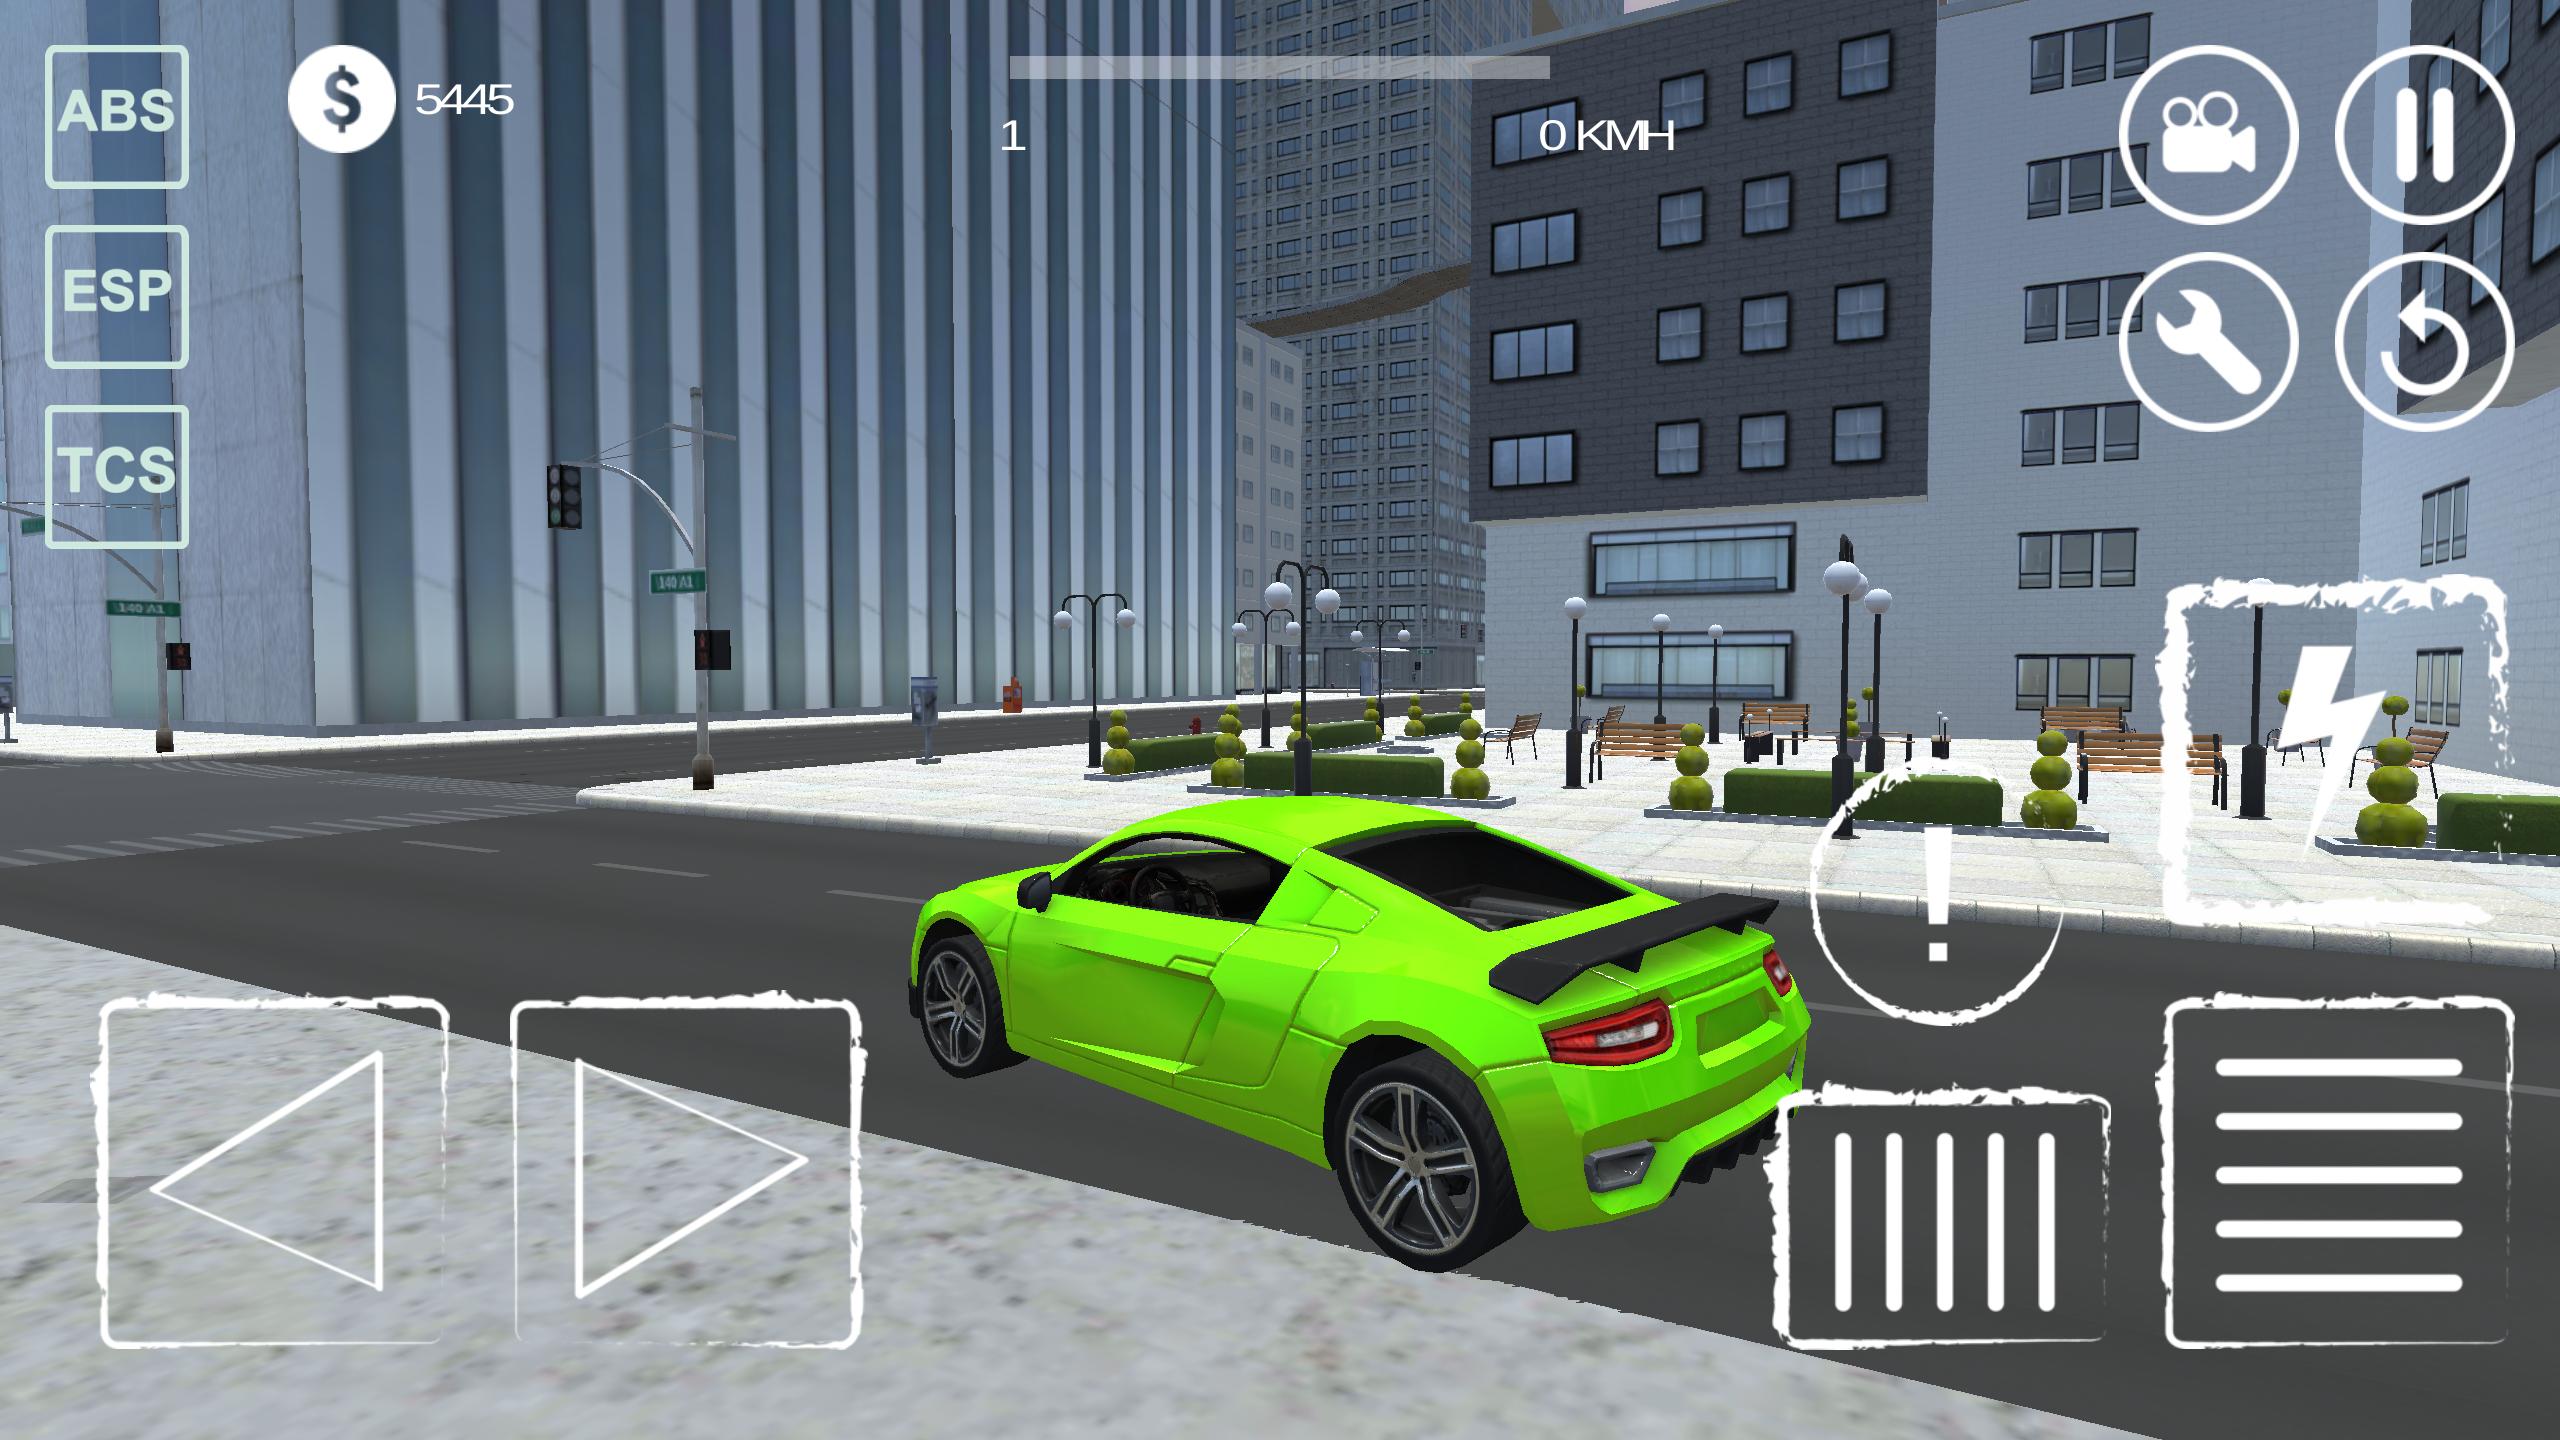 Версия игры extreme car driving simulator. Экстрим car Driving Simulator. Extreme car Driving simu игра. Экстриме кар драйвинг симулятор 5.0.0. Extreme Driving Simulator андроид.